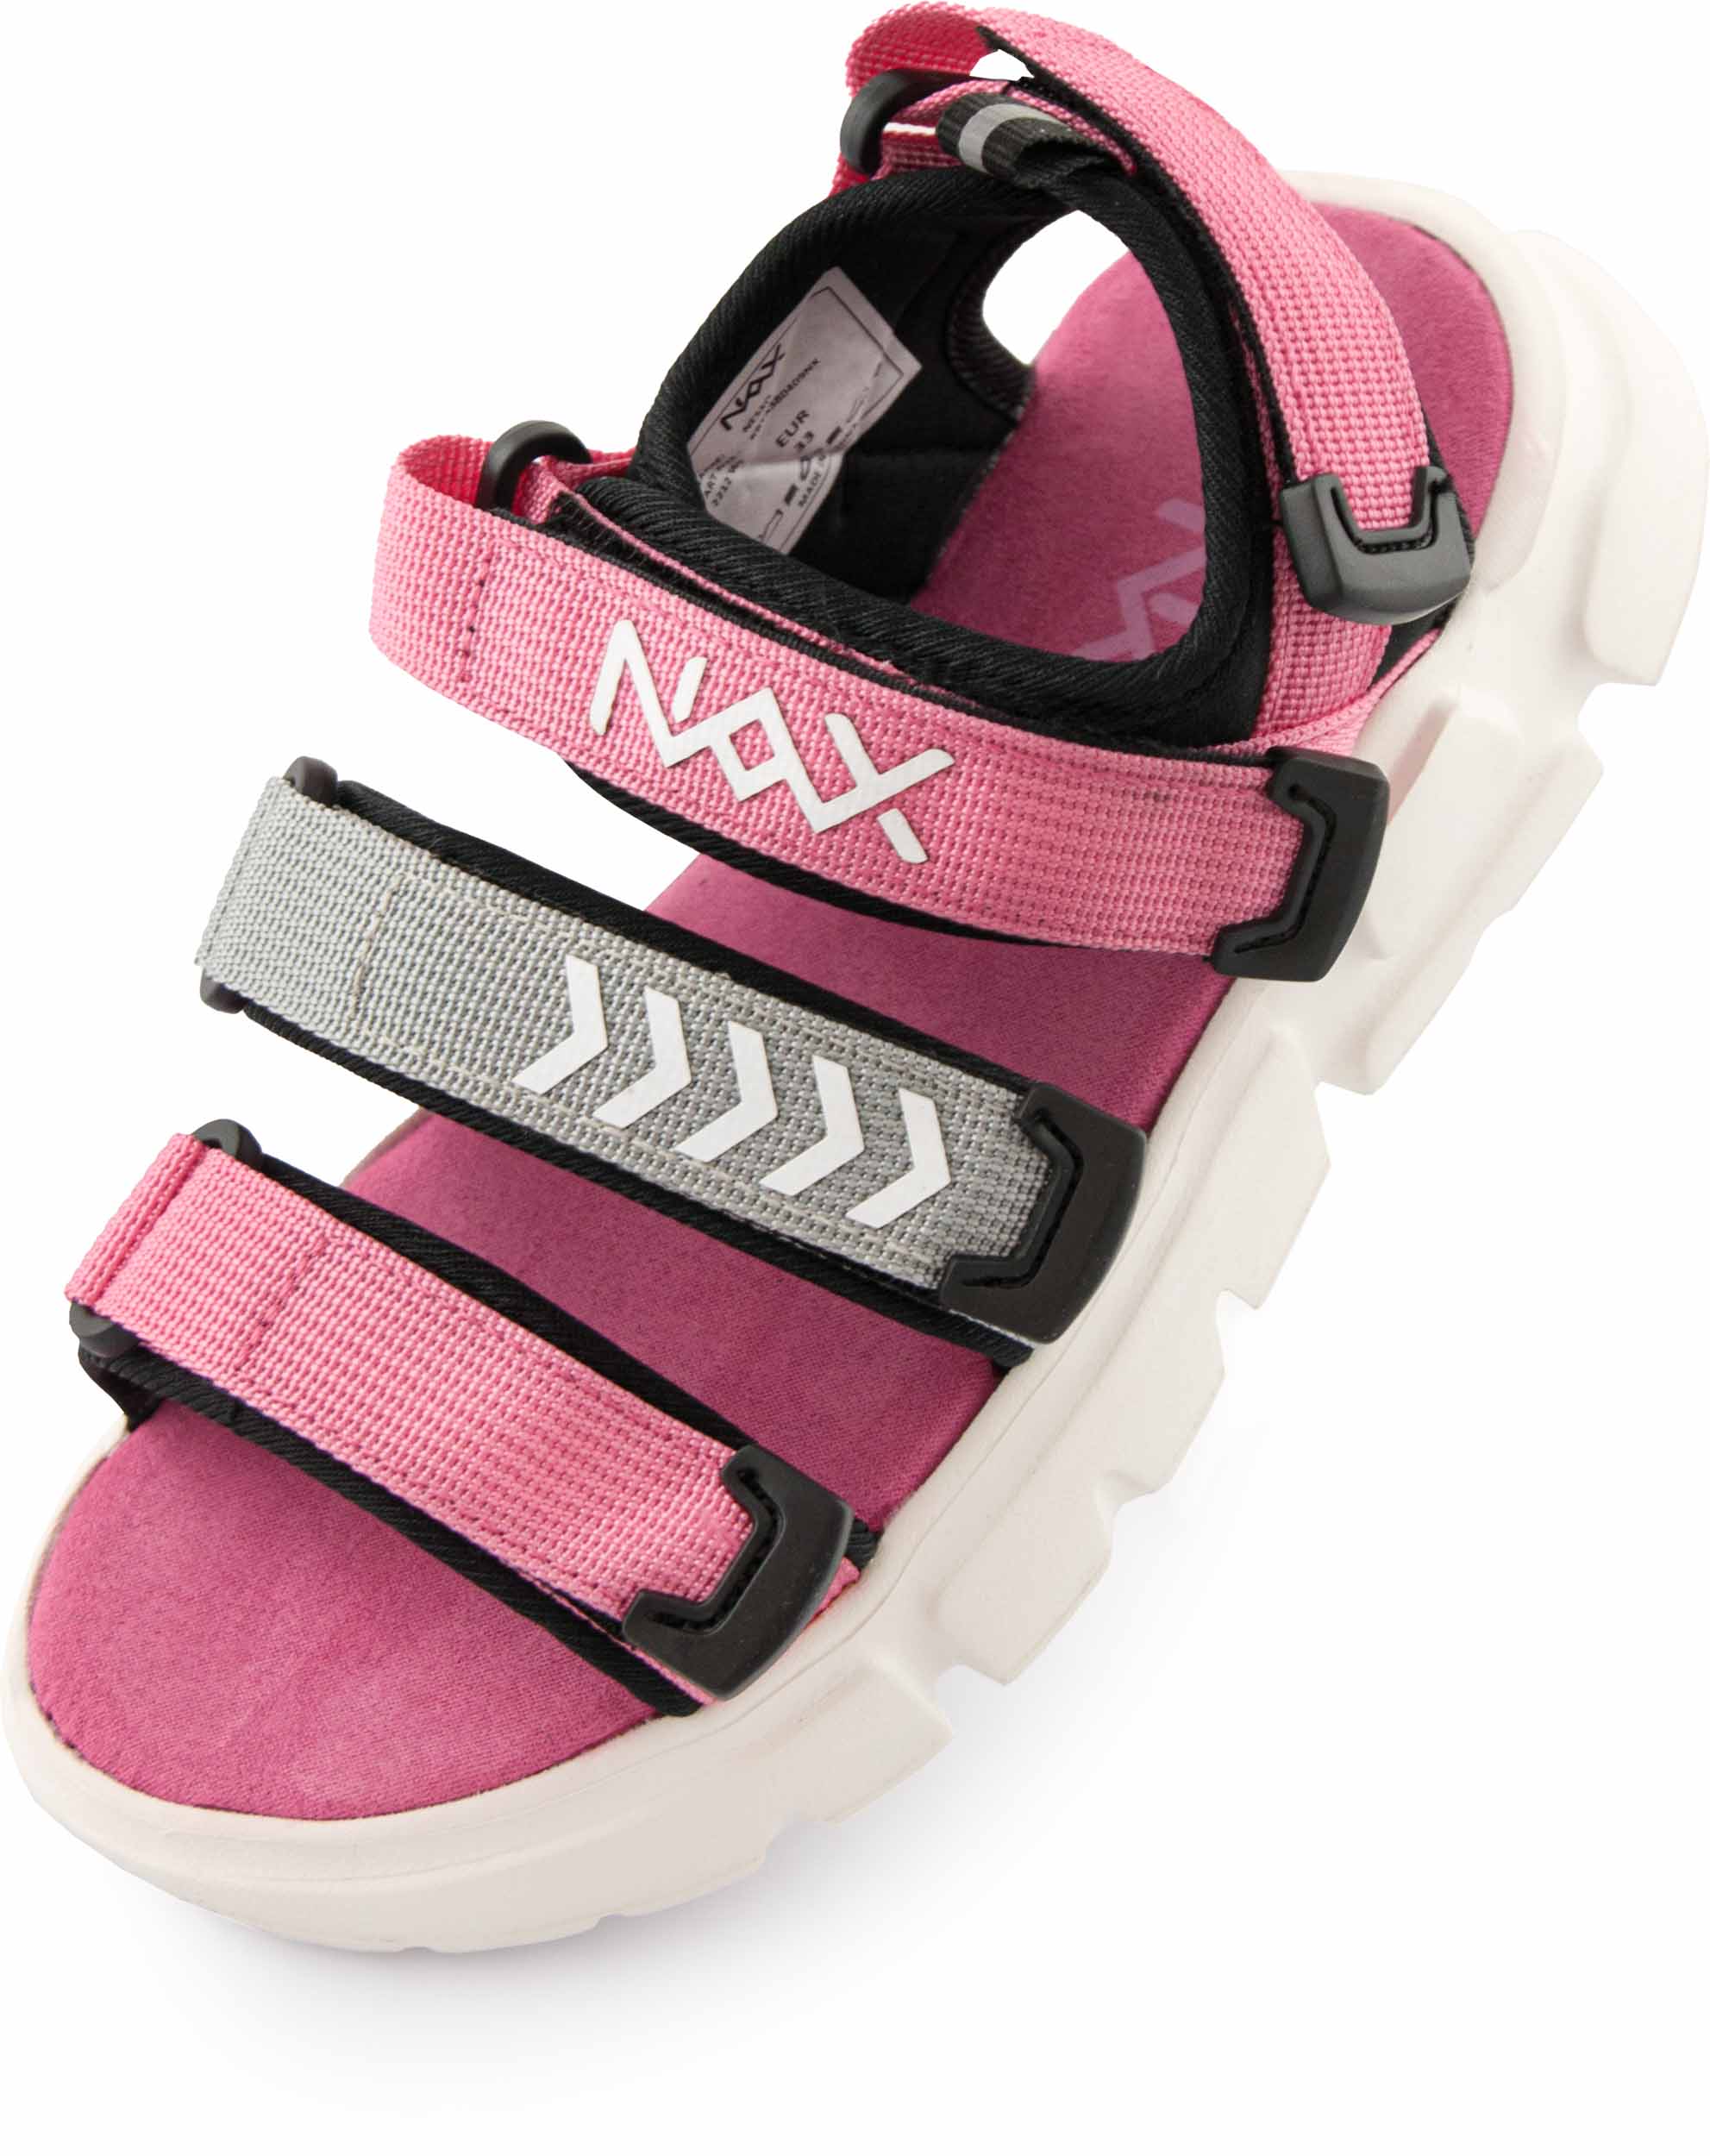 Dětské sandály NAX NESSO|33